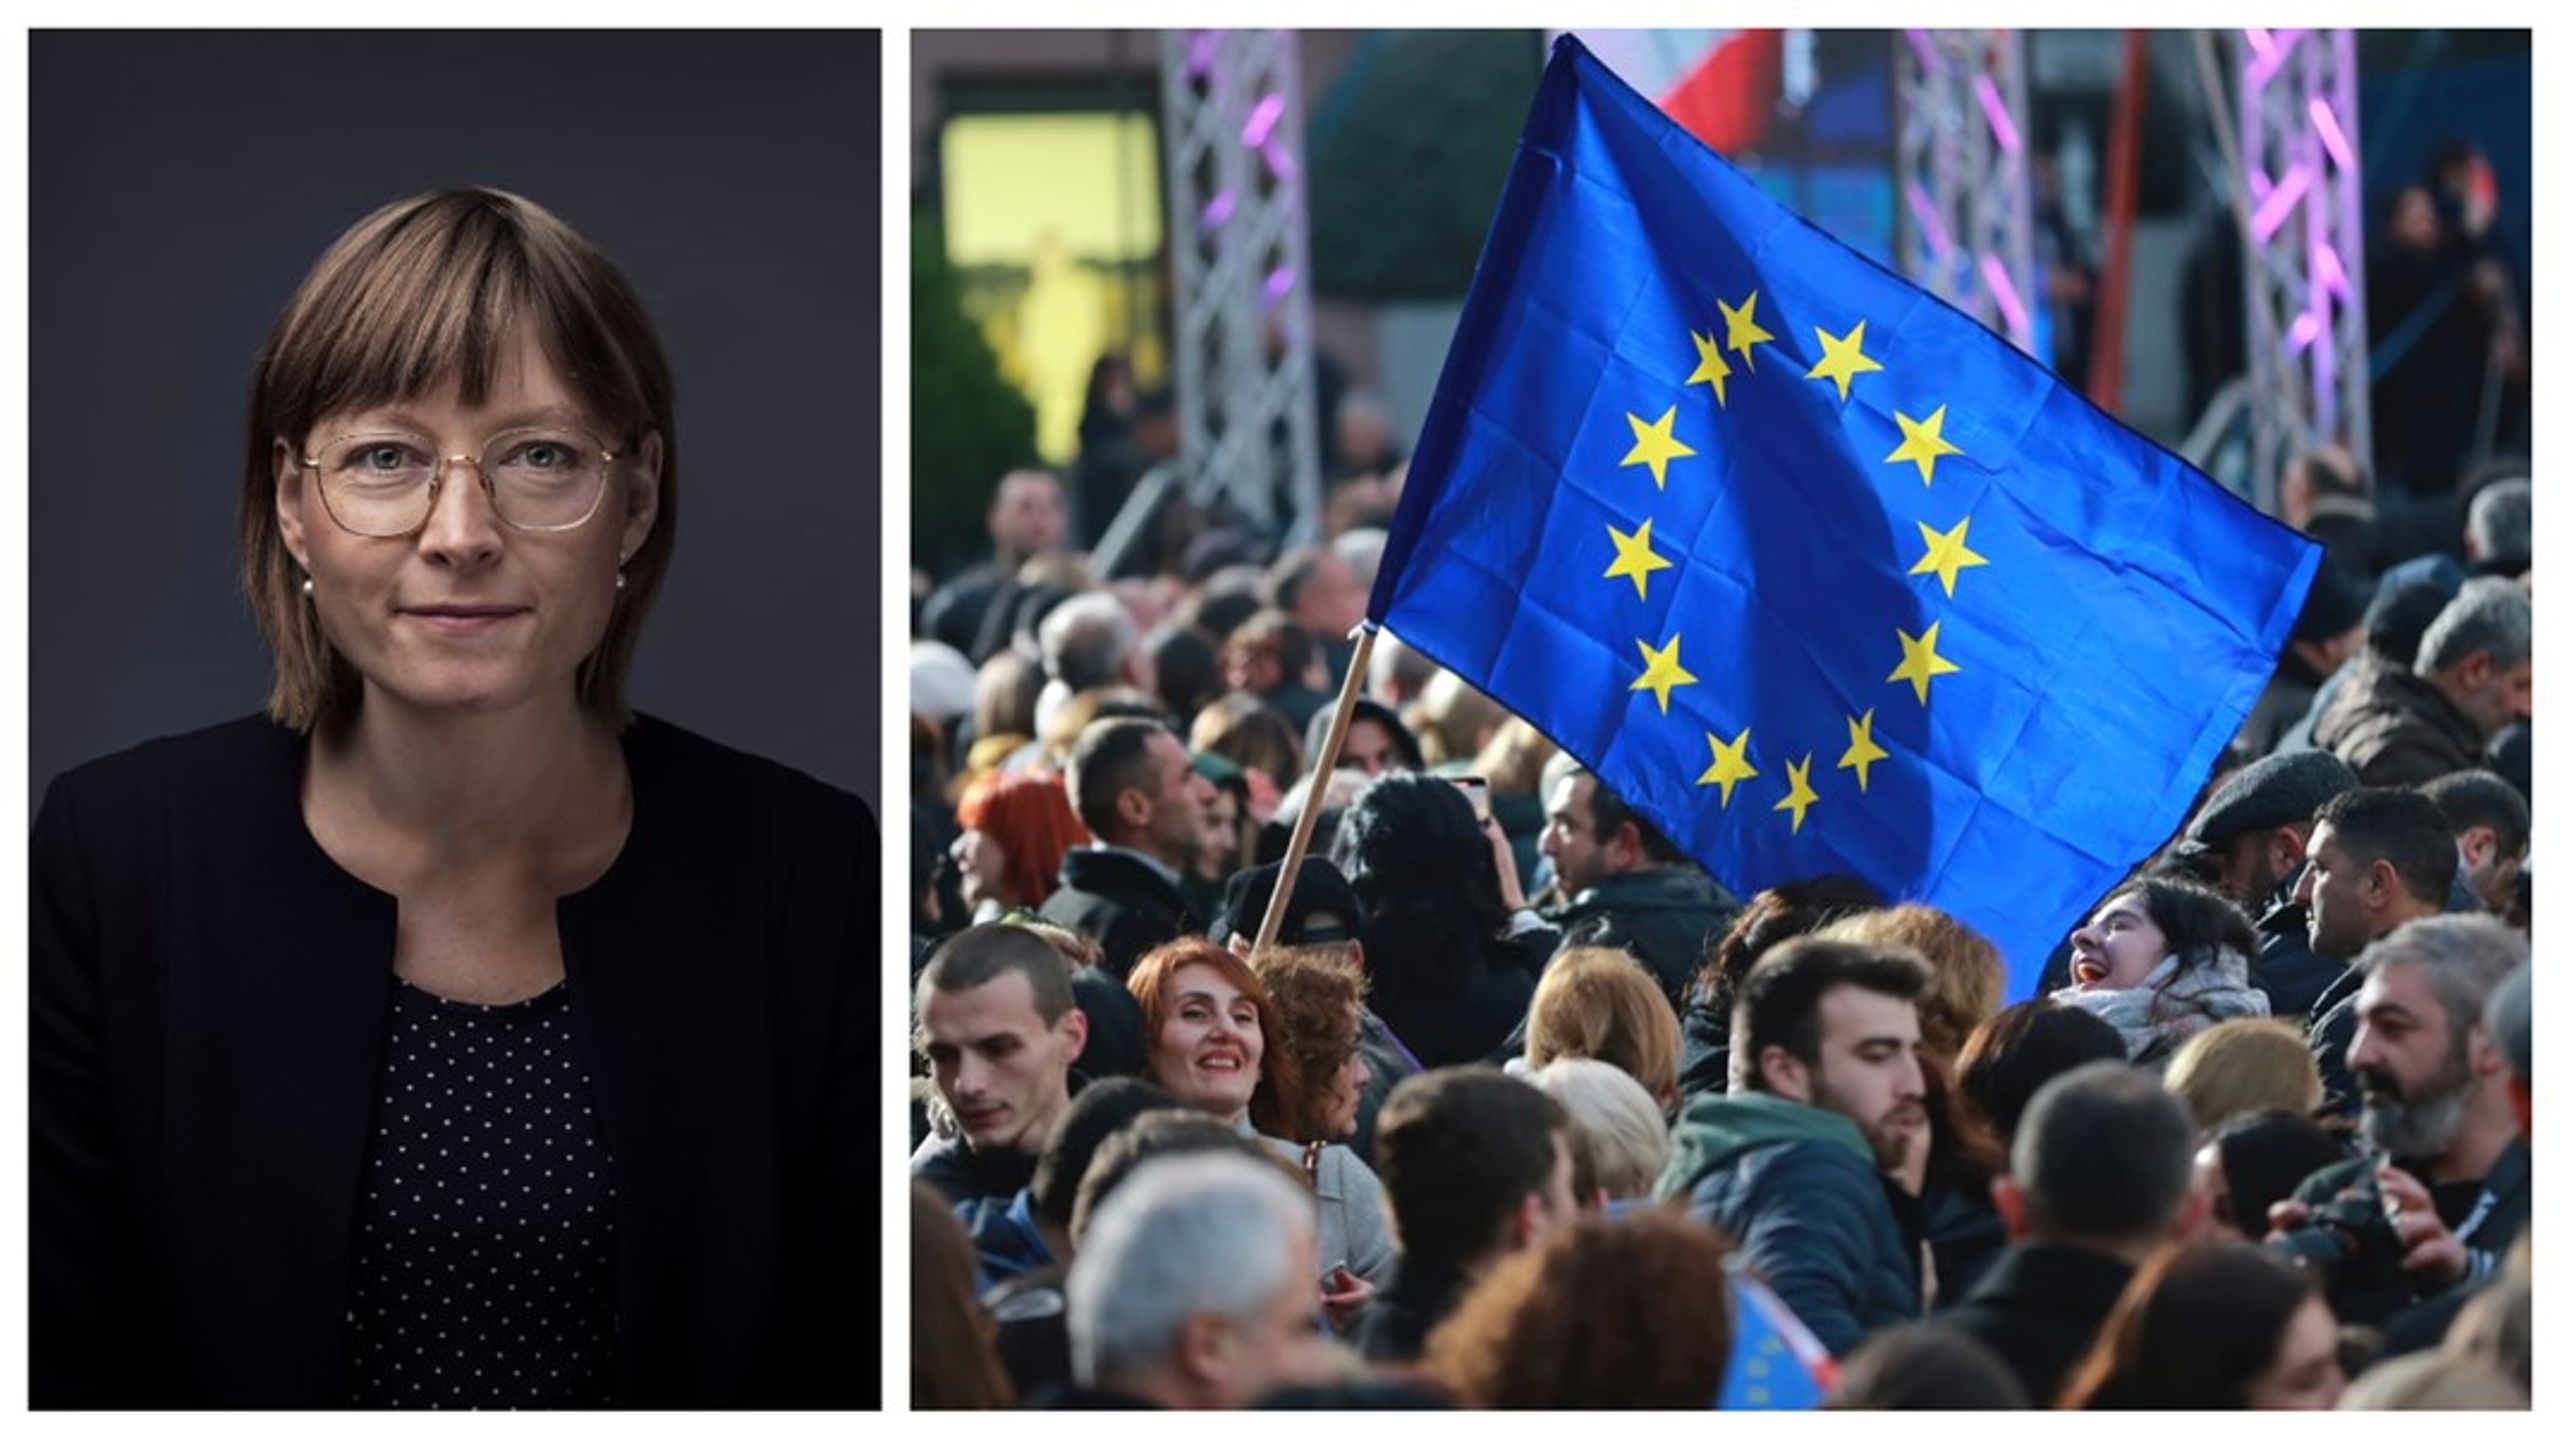 Efter Ruslands invasion af Ukraine i 2014 kan vi observere, at ikke blot danske politikere, men også befolkningen i stigende grad ser EU som afgørende for Danmarks sikkerhed, lyder det fra&nbsp;Rebecca Adler-Nissen.